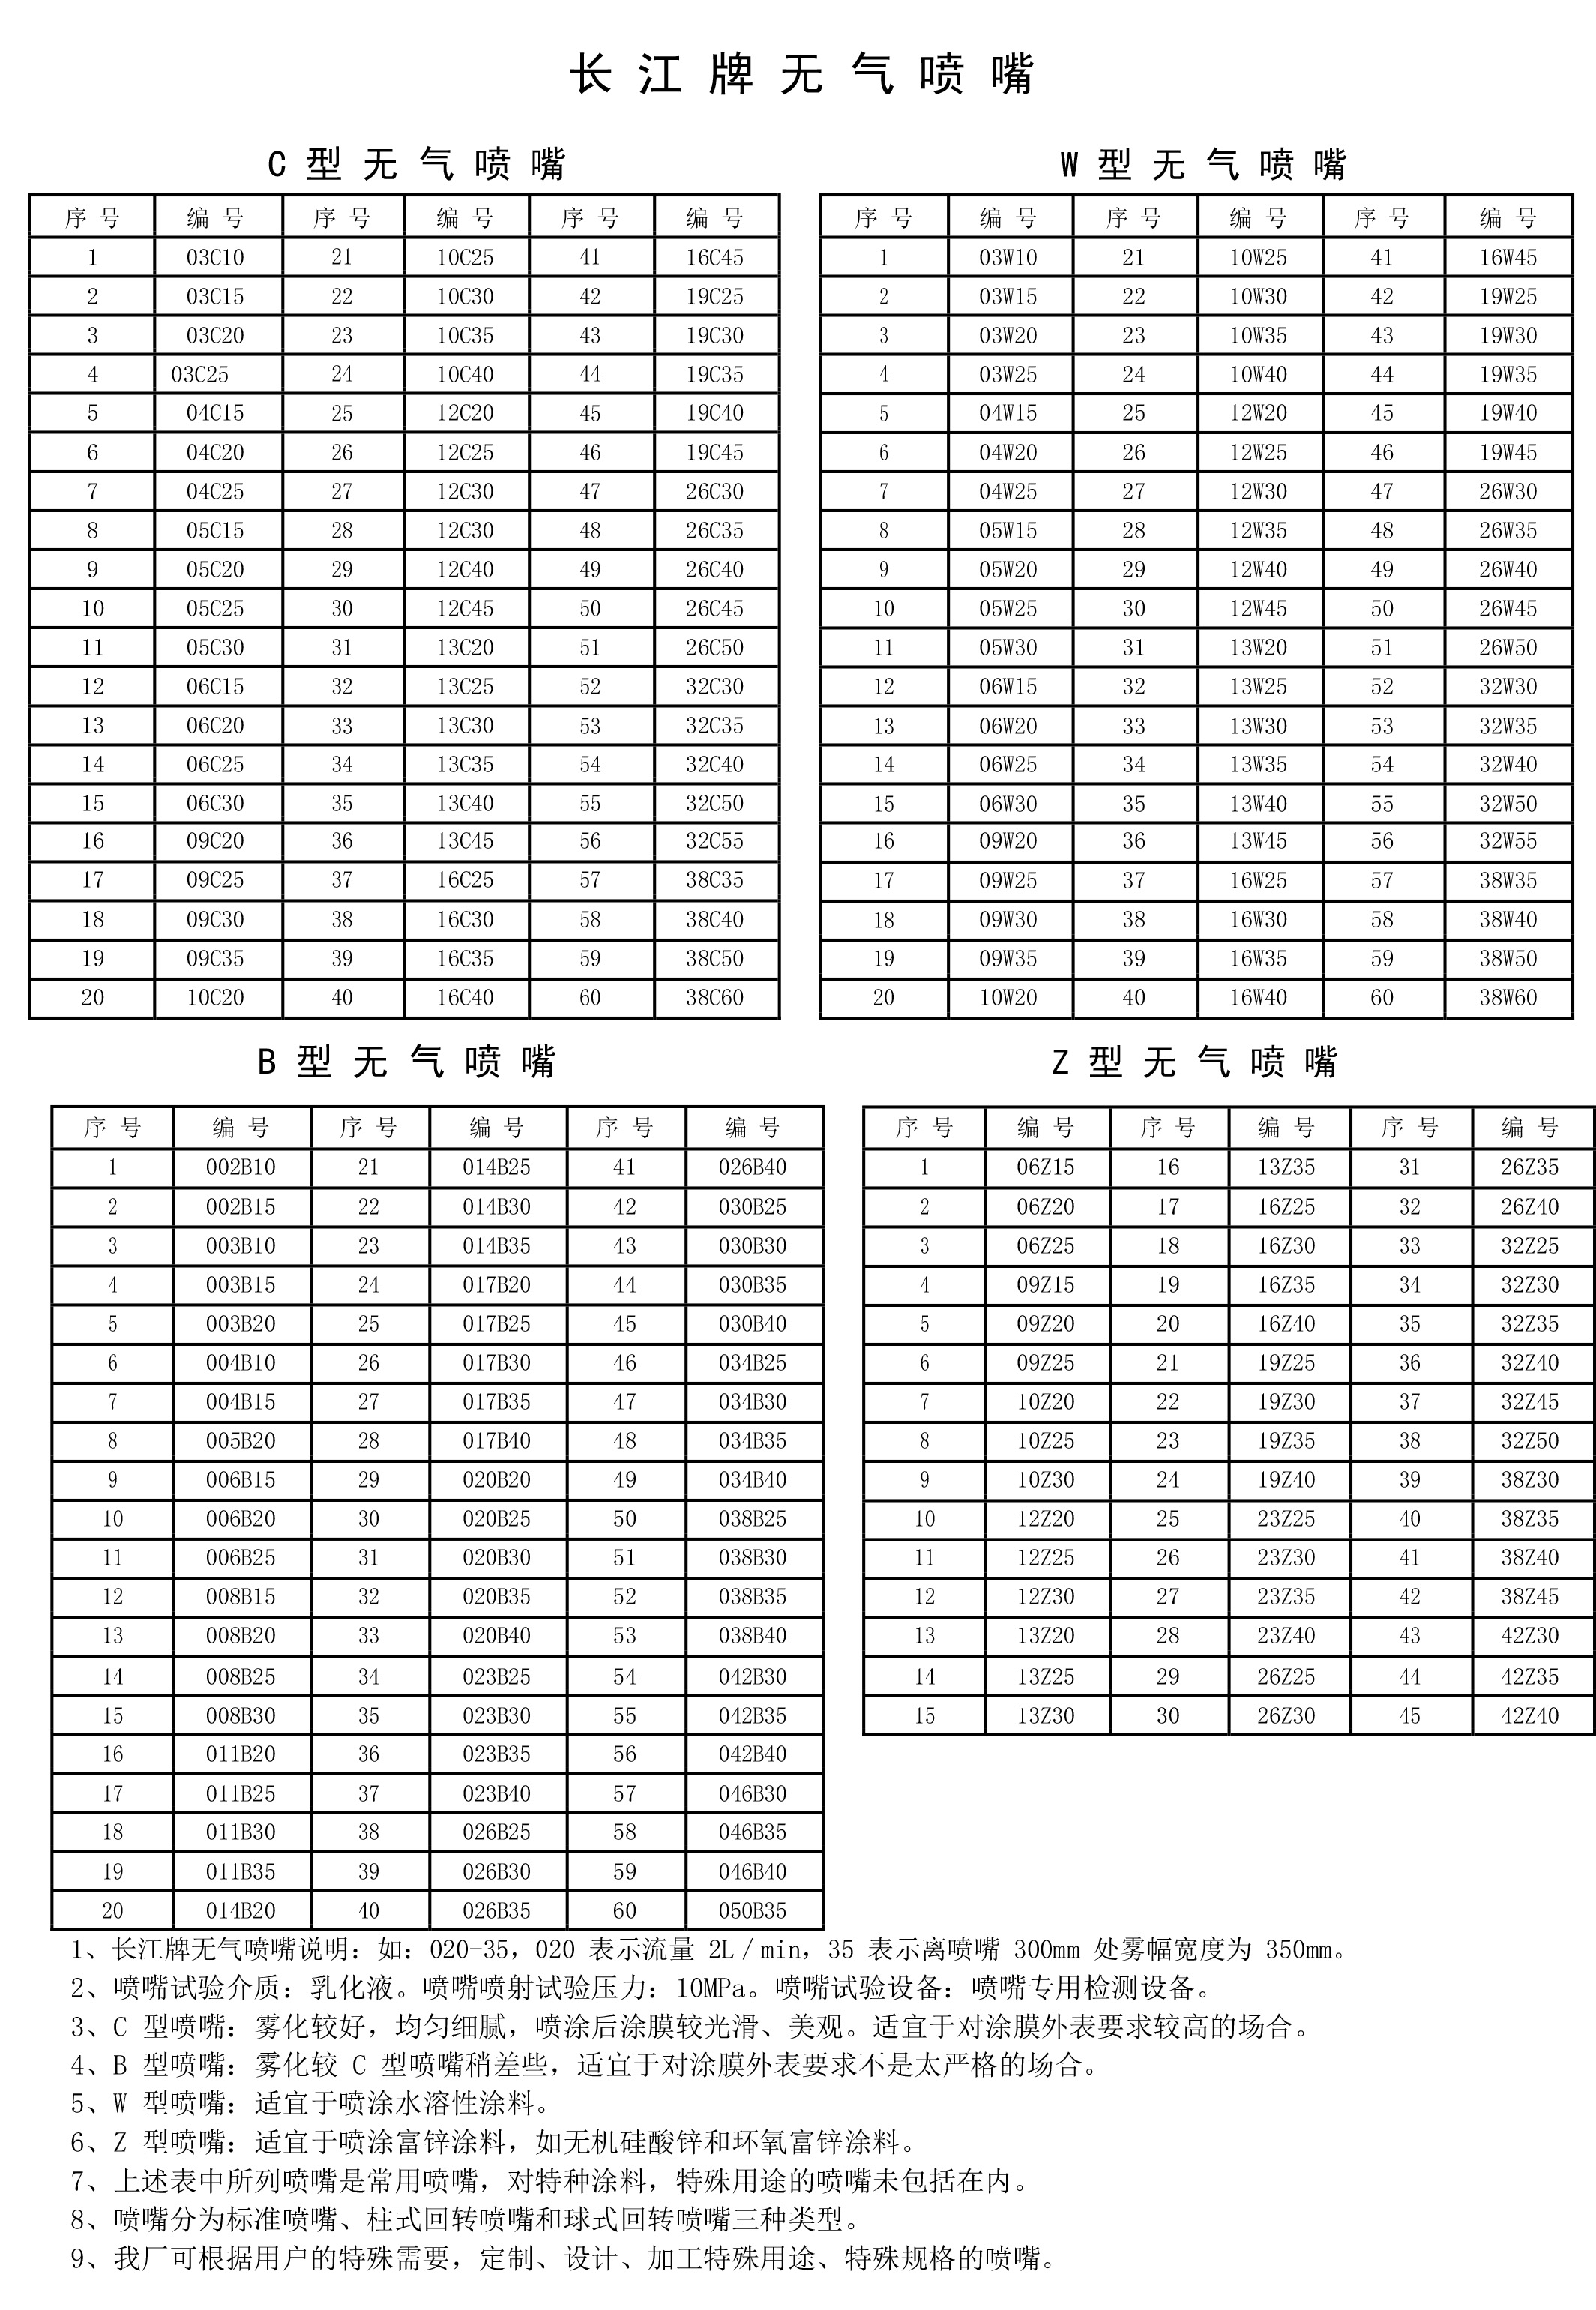 长江喷嘴选型表.jpg